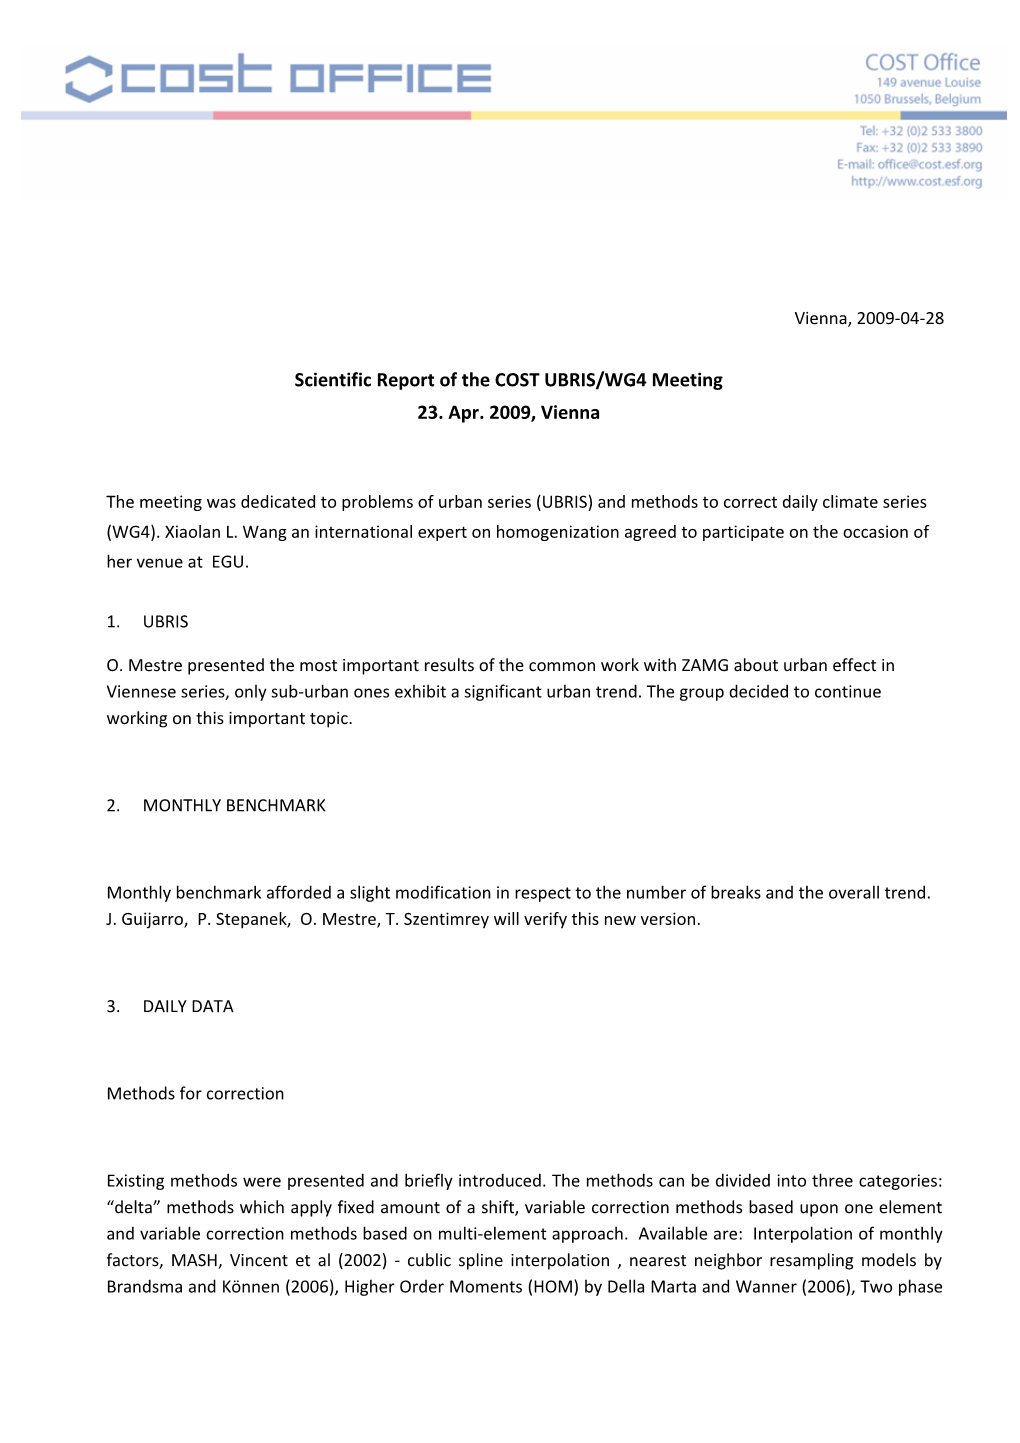 Scientific Report of the COST UBRIS/WG4 Meeting